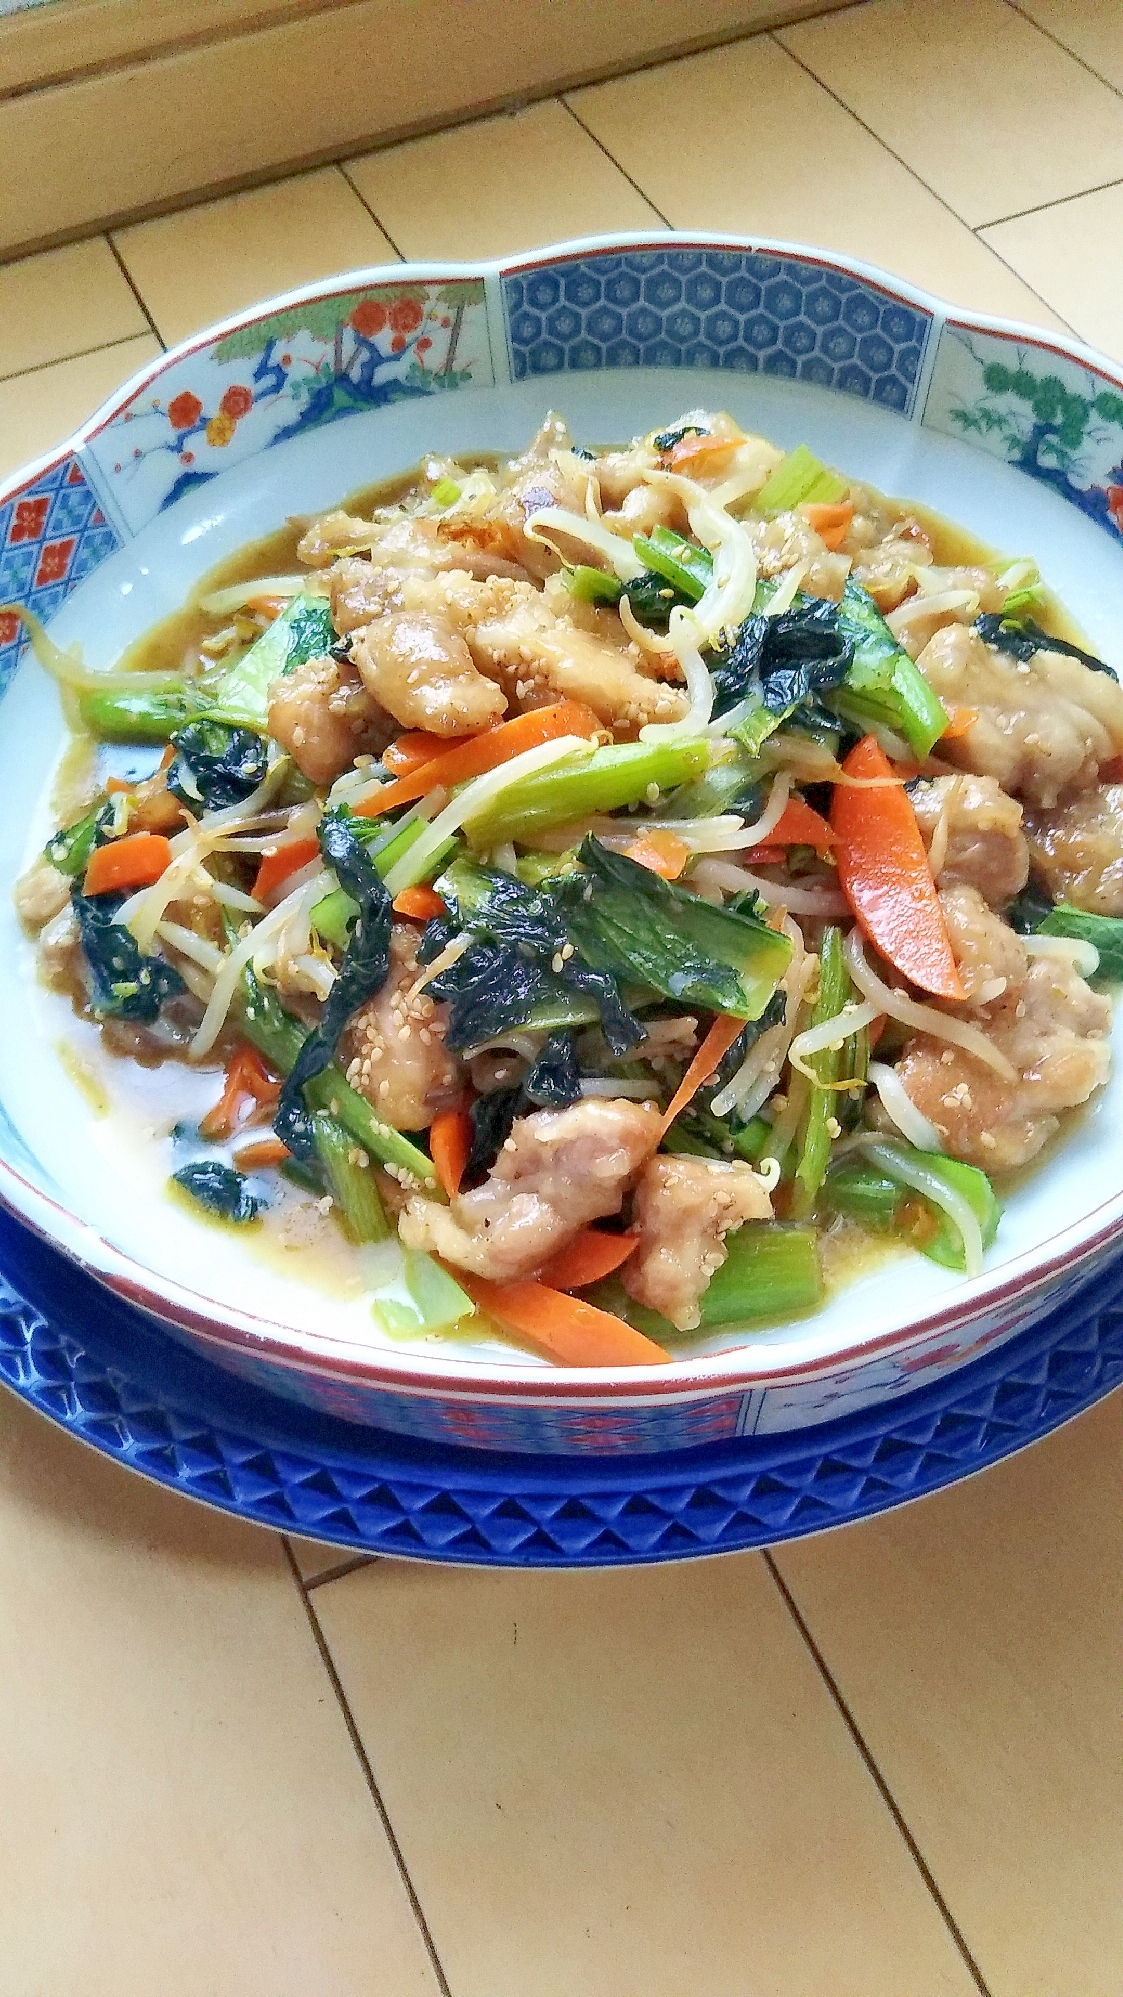 【大皿料理】鶏肉のナムル炒め